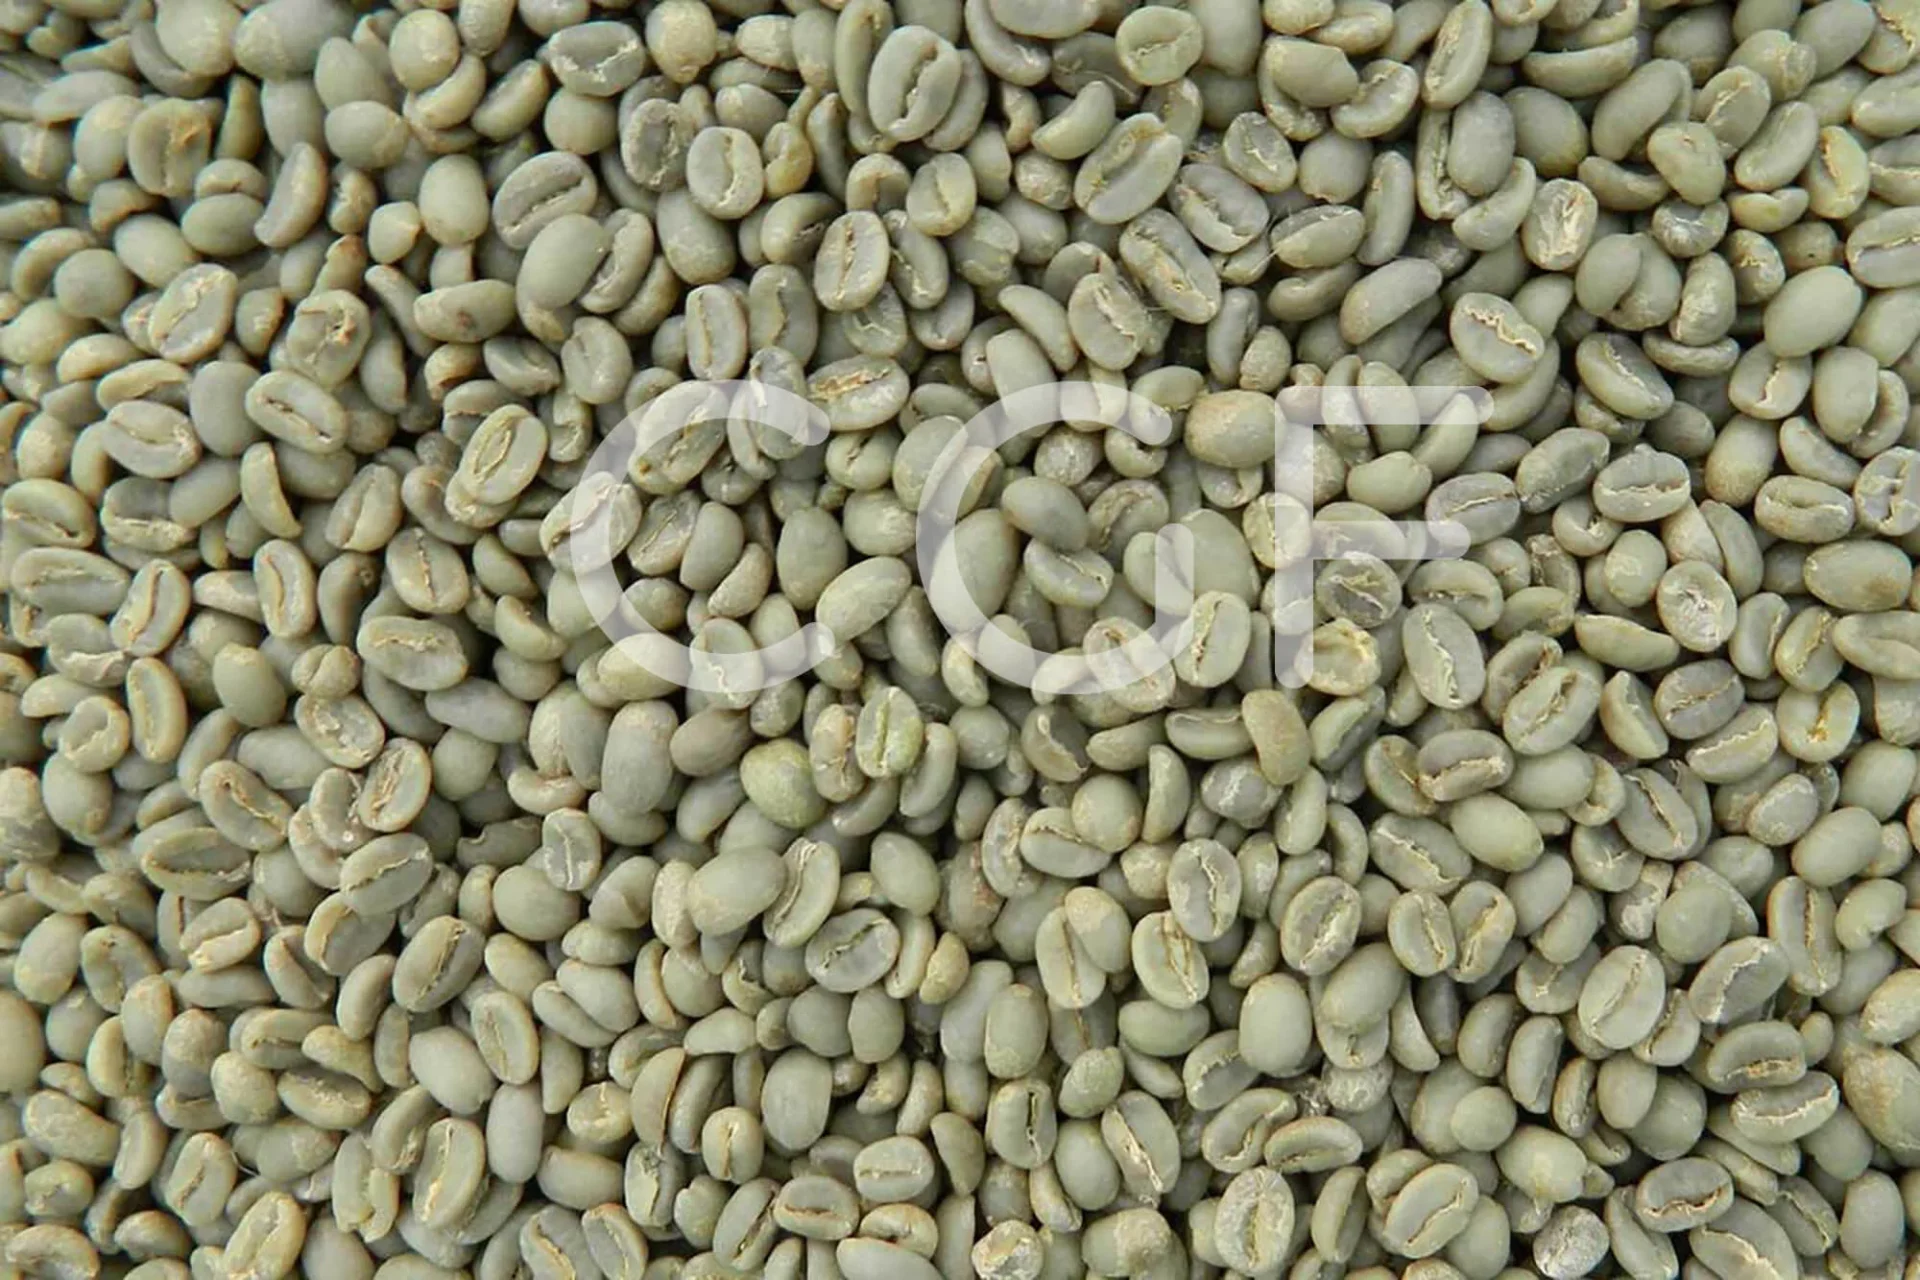 CGF_Export_Ethiopia_Coffee_01